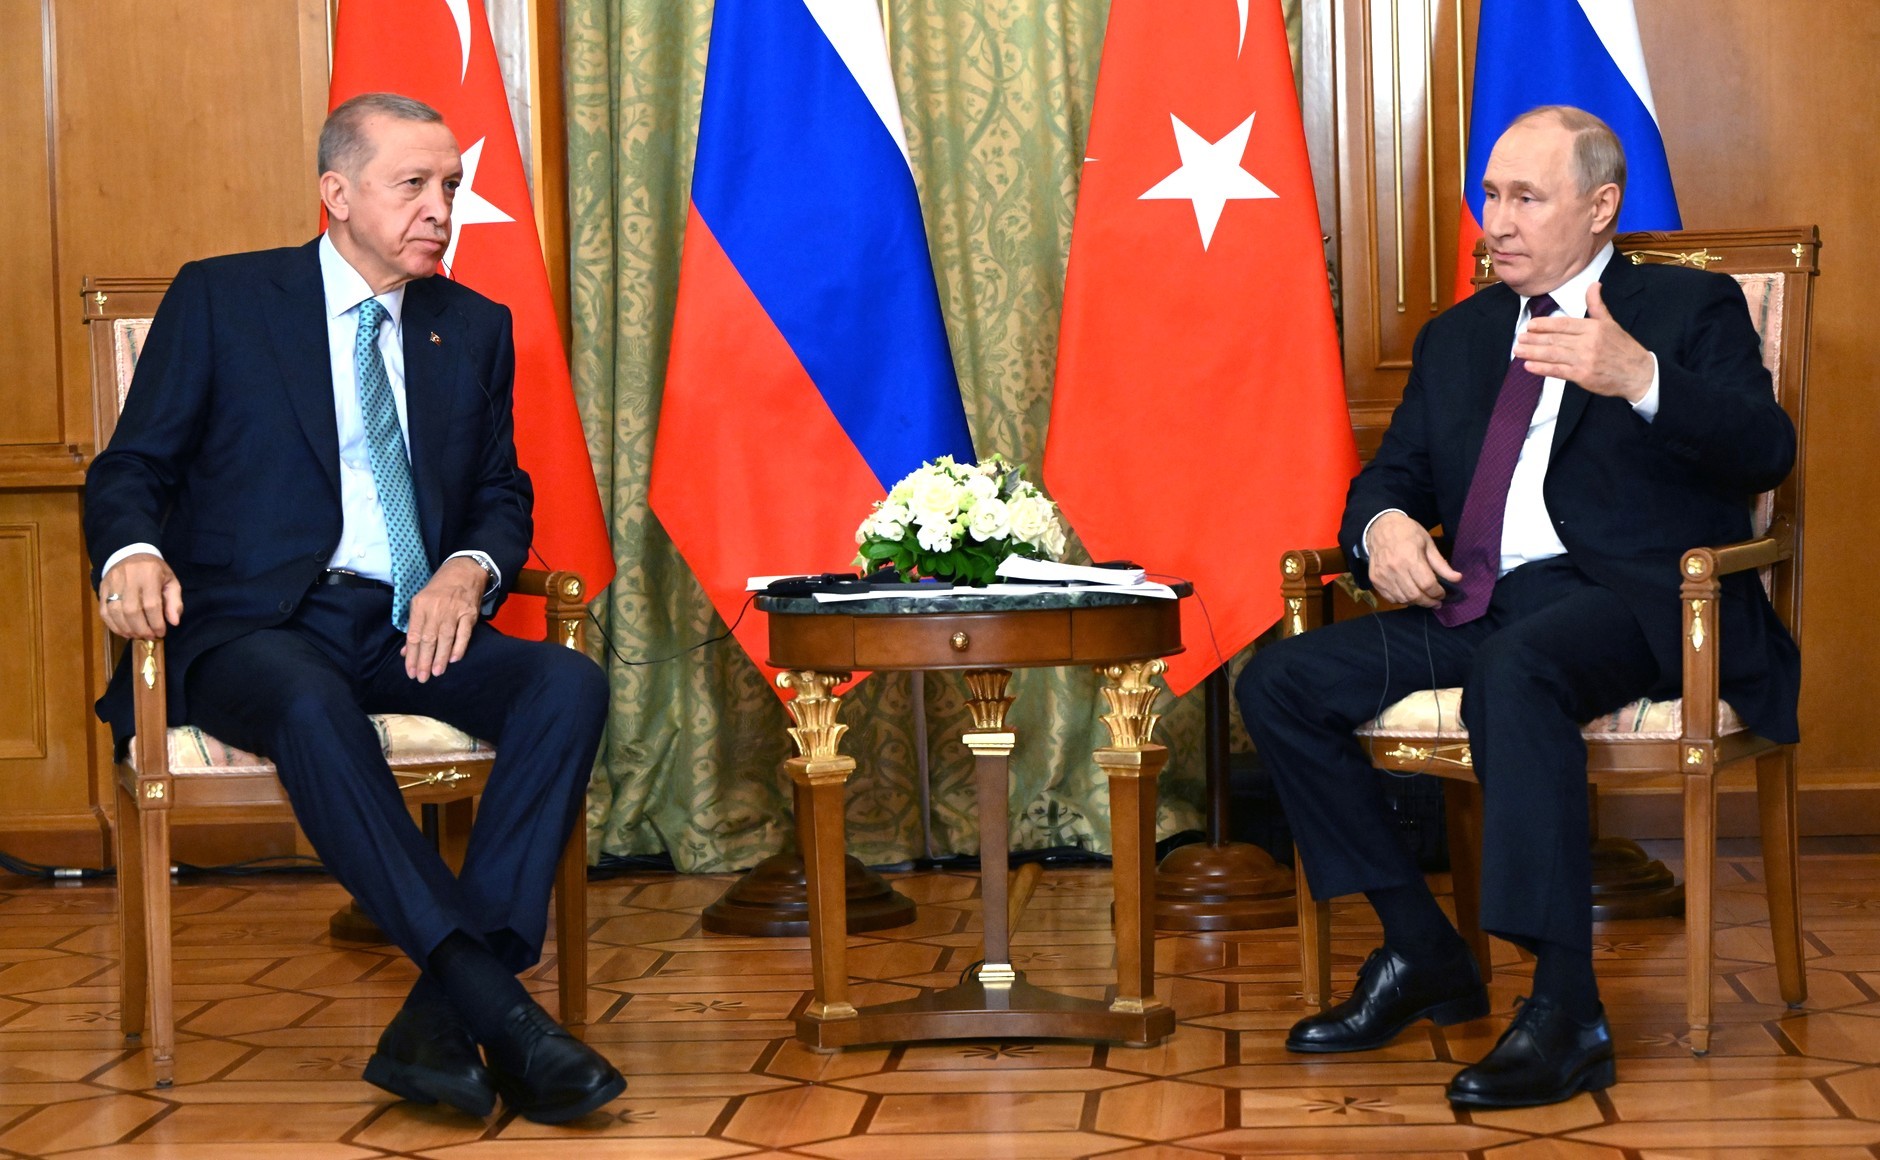 UPDATE – Întâlnirea lui Putin cu Ergodan a început. Liderul de la Kremlin anunţă că este deschis la negocieri pe tema acordului de la Marea Neagră / Echipa economică a preşedintelui turc îl însoţeşte pe Erdogan